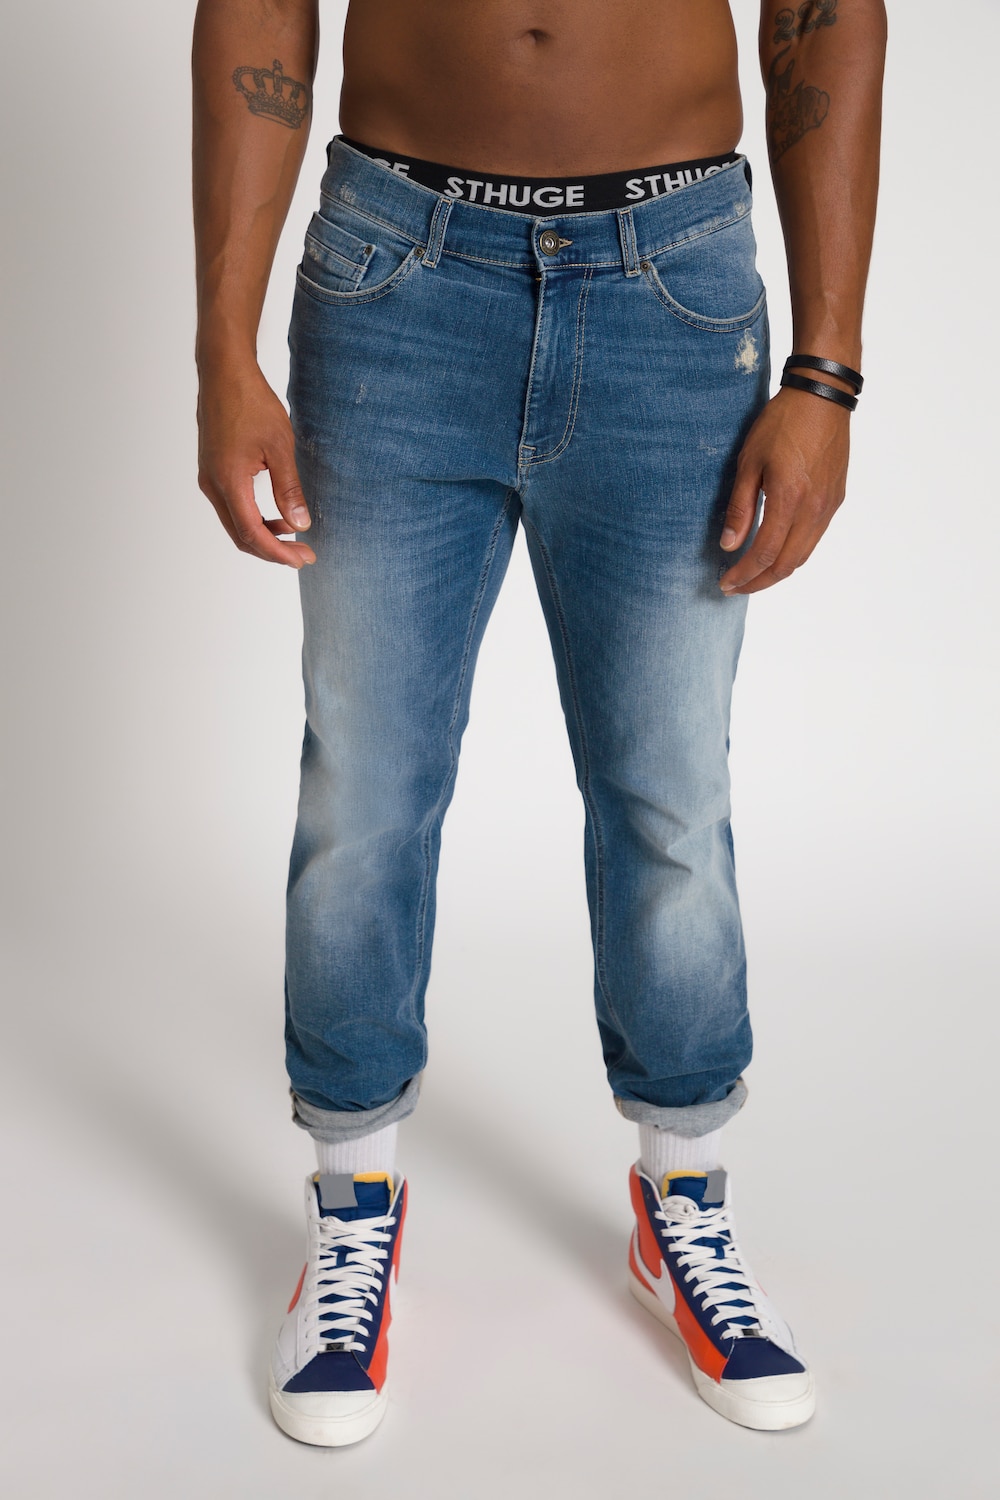 Grote Maten STHUGE jeans FLEXLASTIC®male, blauw, Maat: 50, Katoen, STHUGE